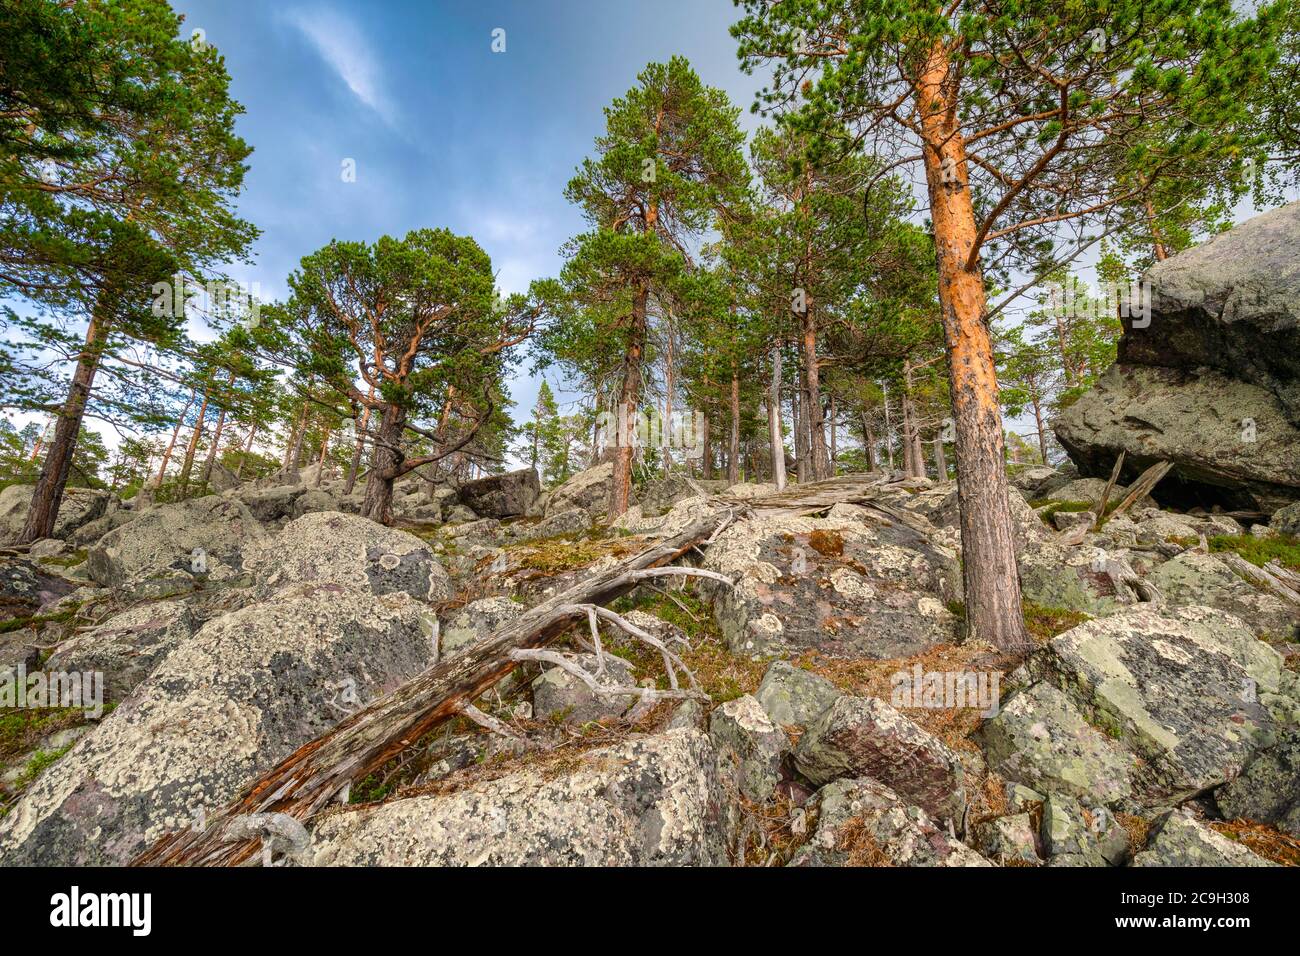 Foresta primordiale nell'area protetta di Laconia, Gaellivare, Norrbottens laen, Svezia Foto Stock